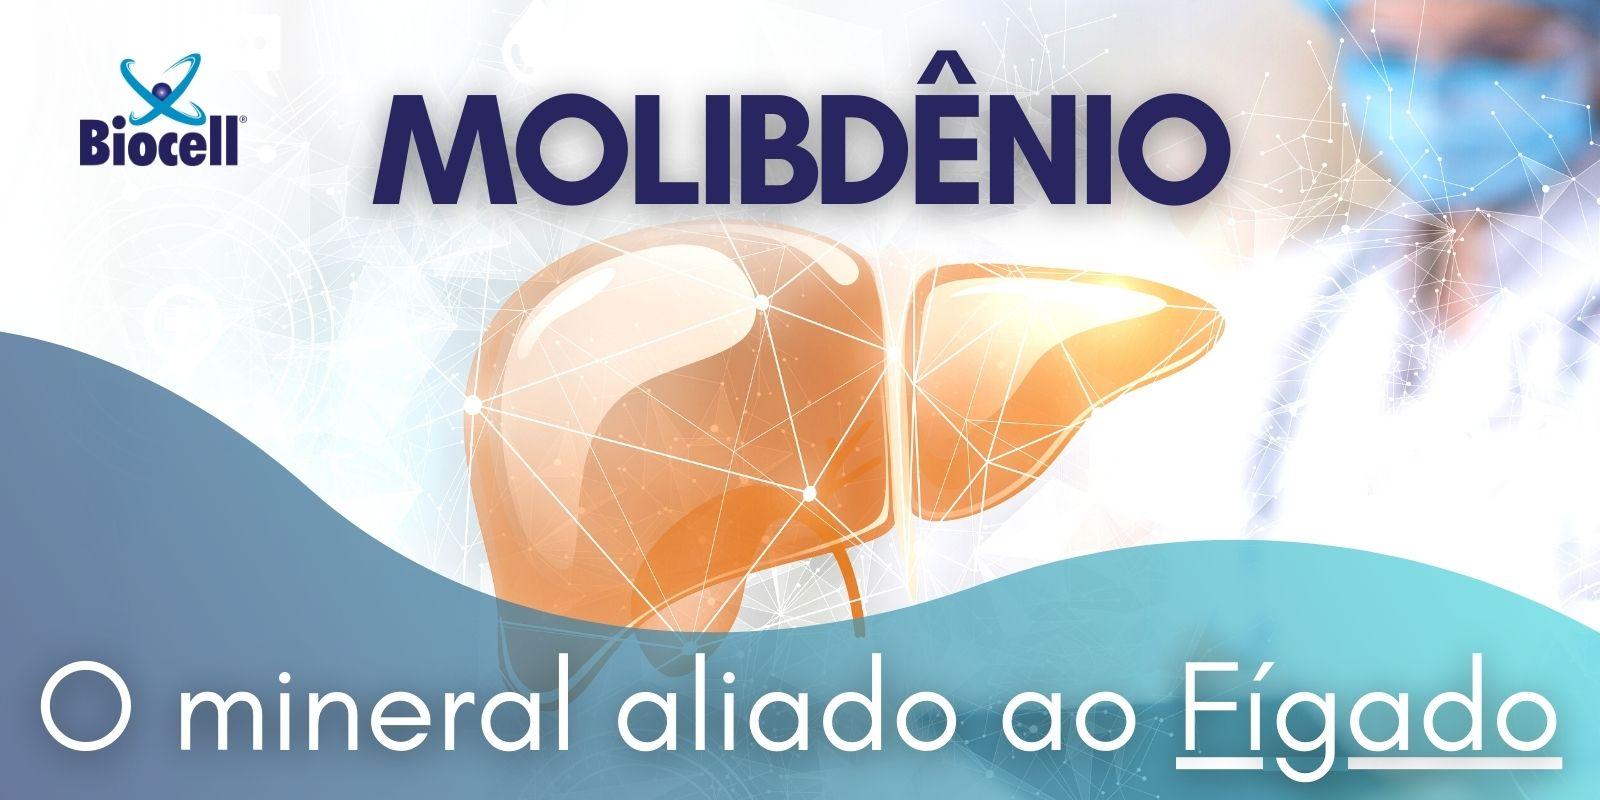 Molibdênio: o mineral aliado ao Fígado